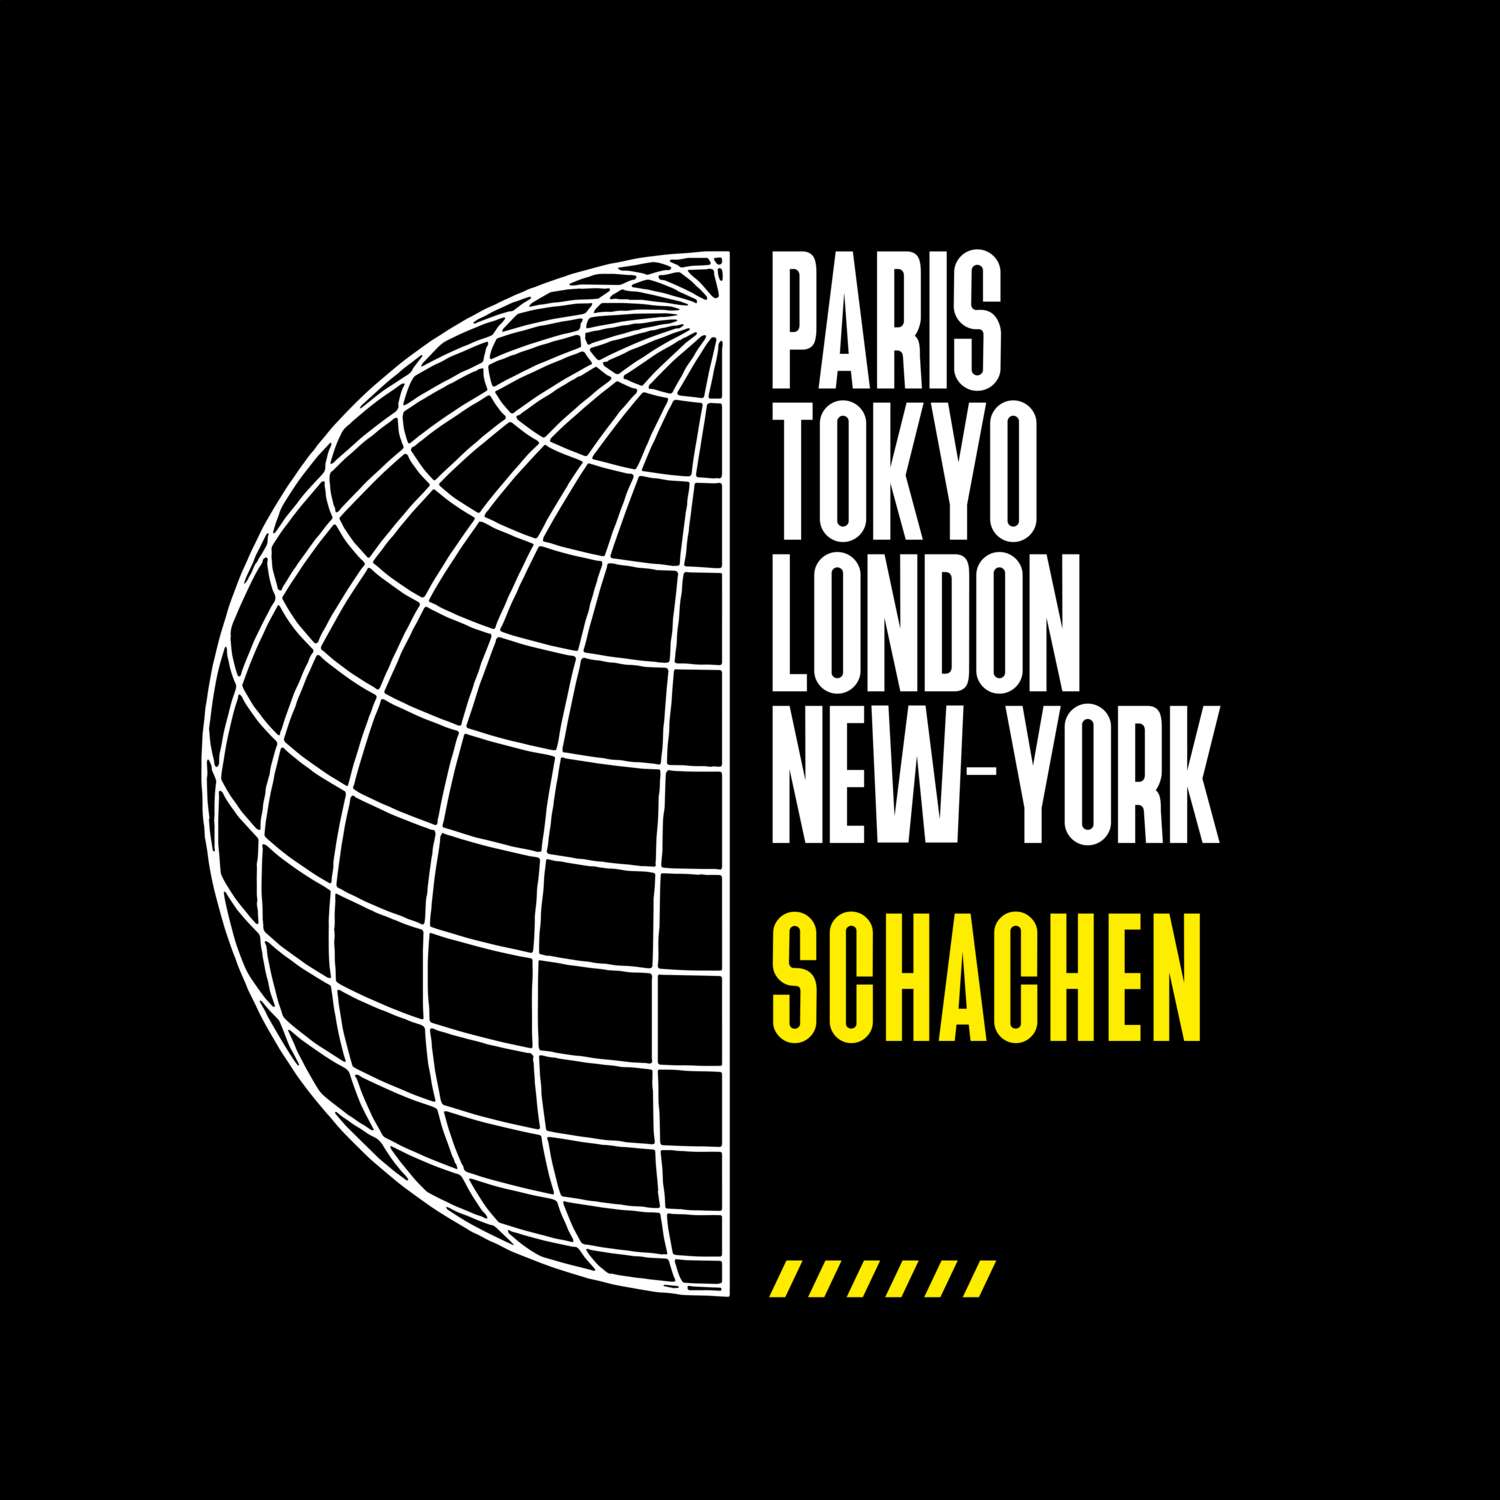 Schachen T-Shirt »Paris Tokyo London«